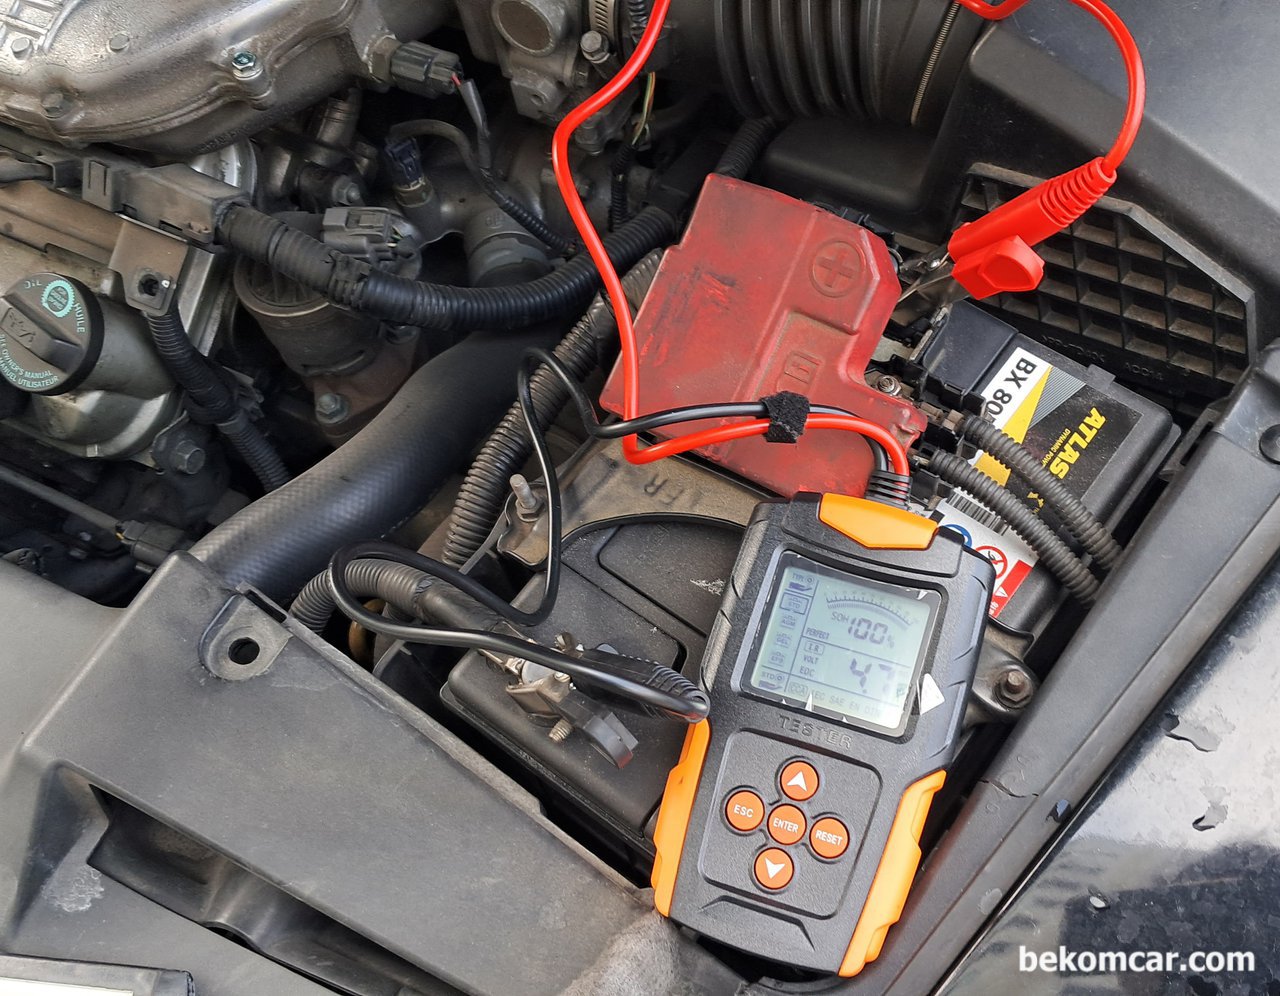 차량이해 - 전기신호의 중요성, 배터리 교환시점은 배터리 측정기를 활용하여 SOH, SOC, CCA, IR등 을 측정하여 배터리 교체할것인지를 결정하는것도 좋을듯 하다.|베콤카 (bekomcar.com)